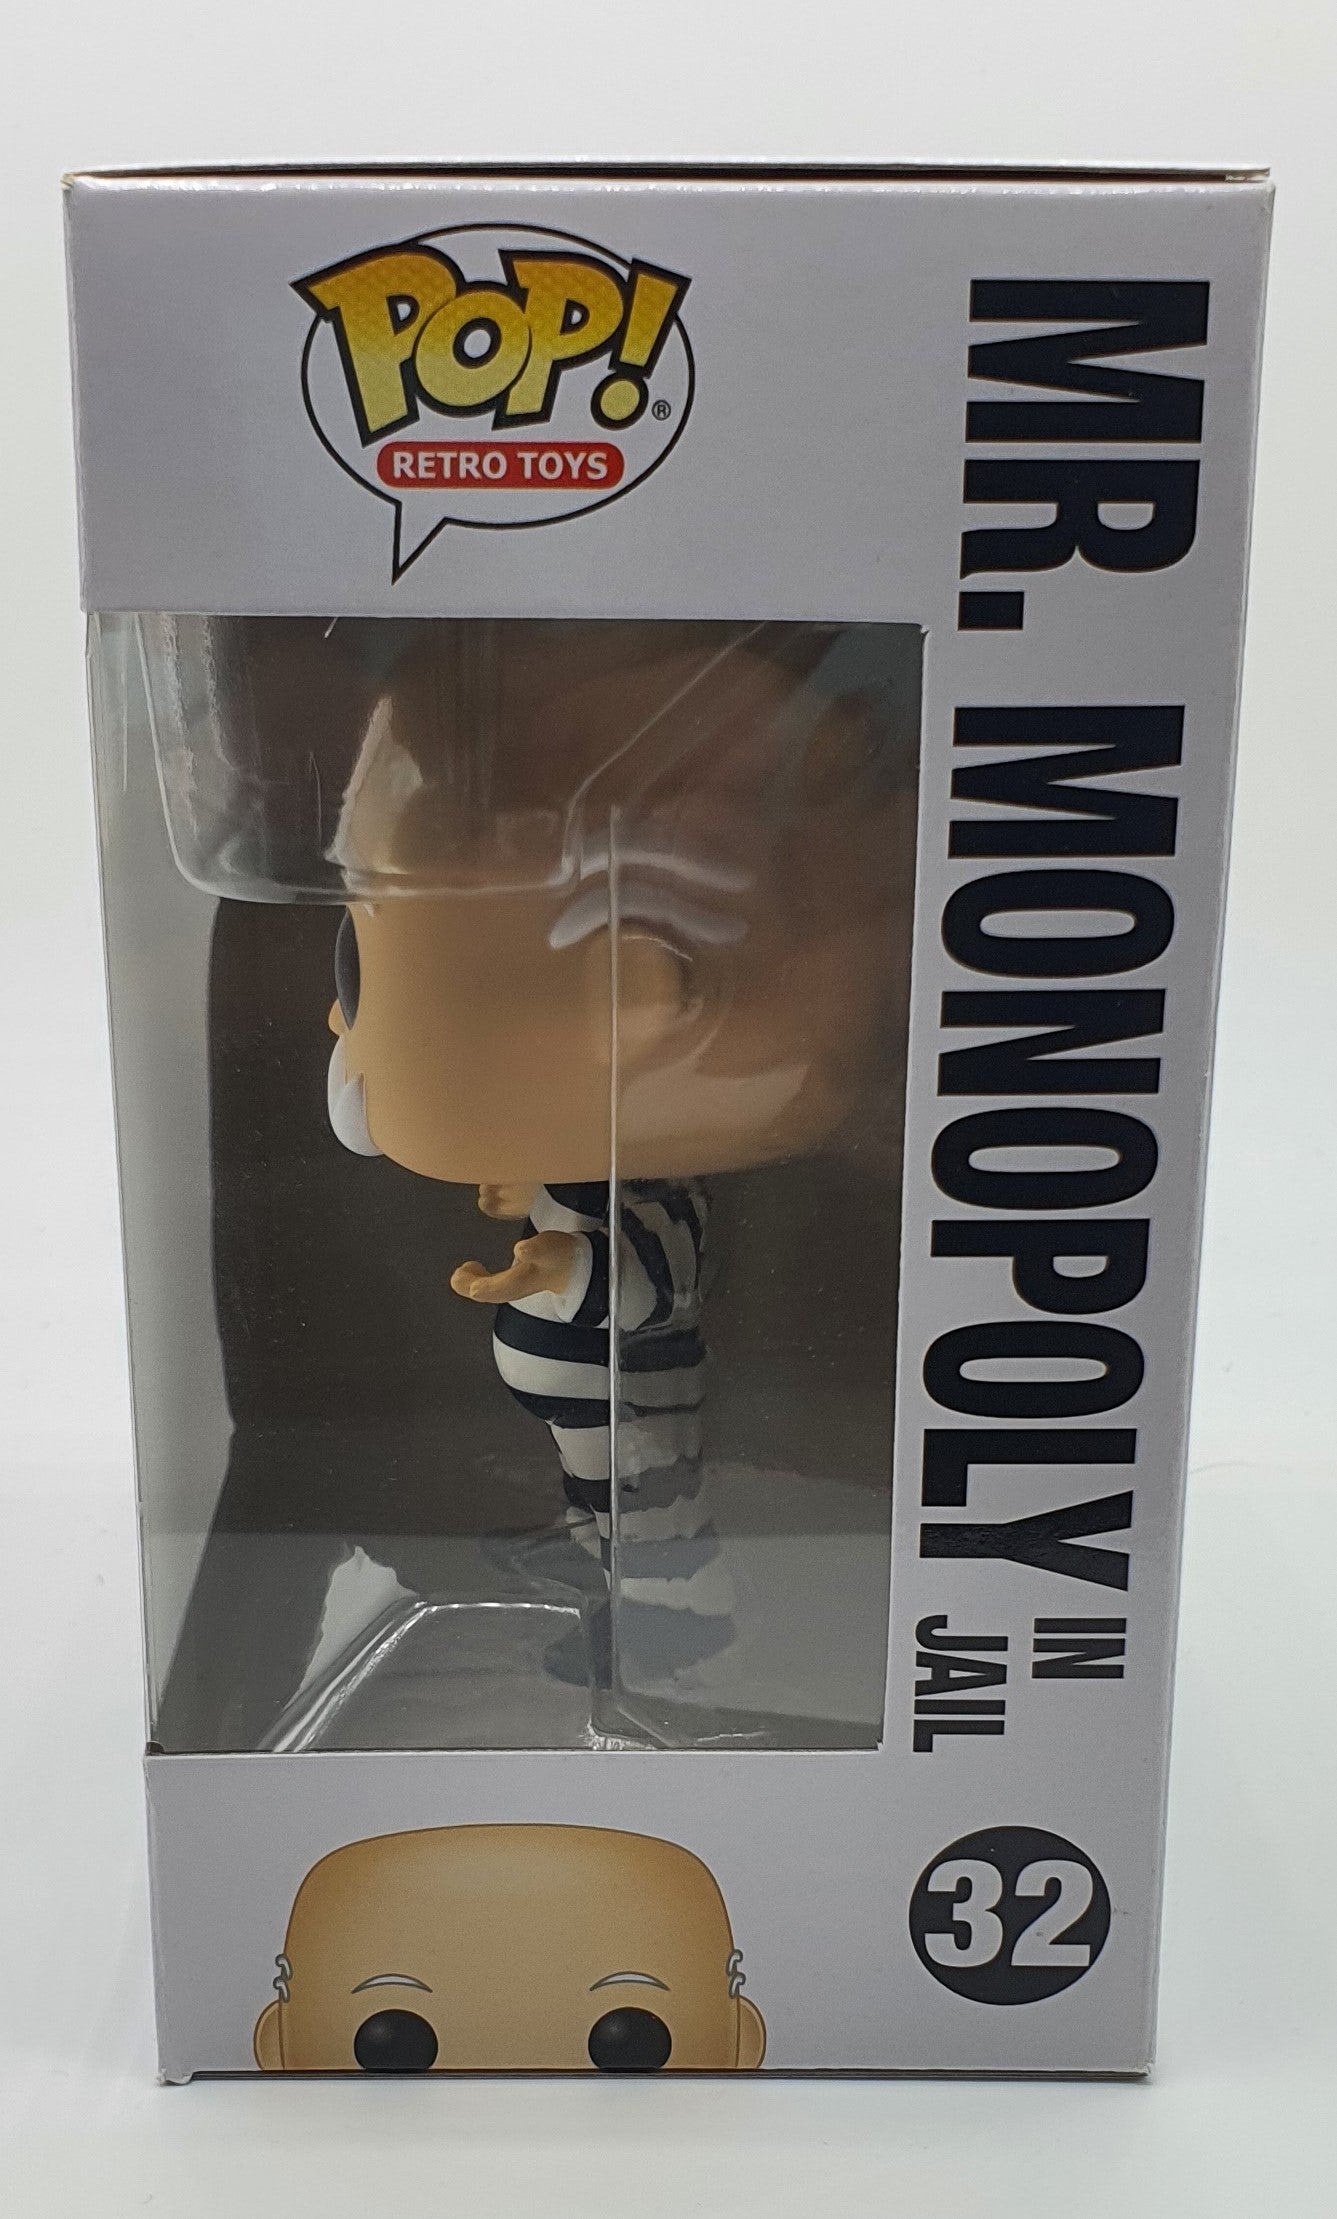 32 - RETRO TOYS - MONOPOLY - MR MONOPOLY